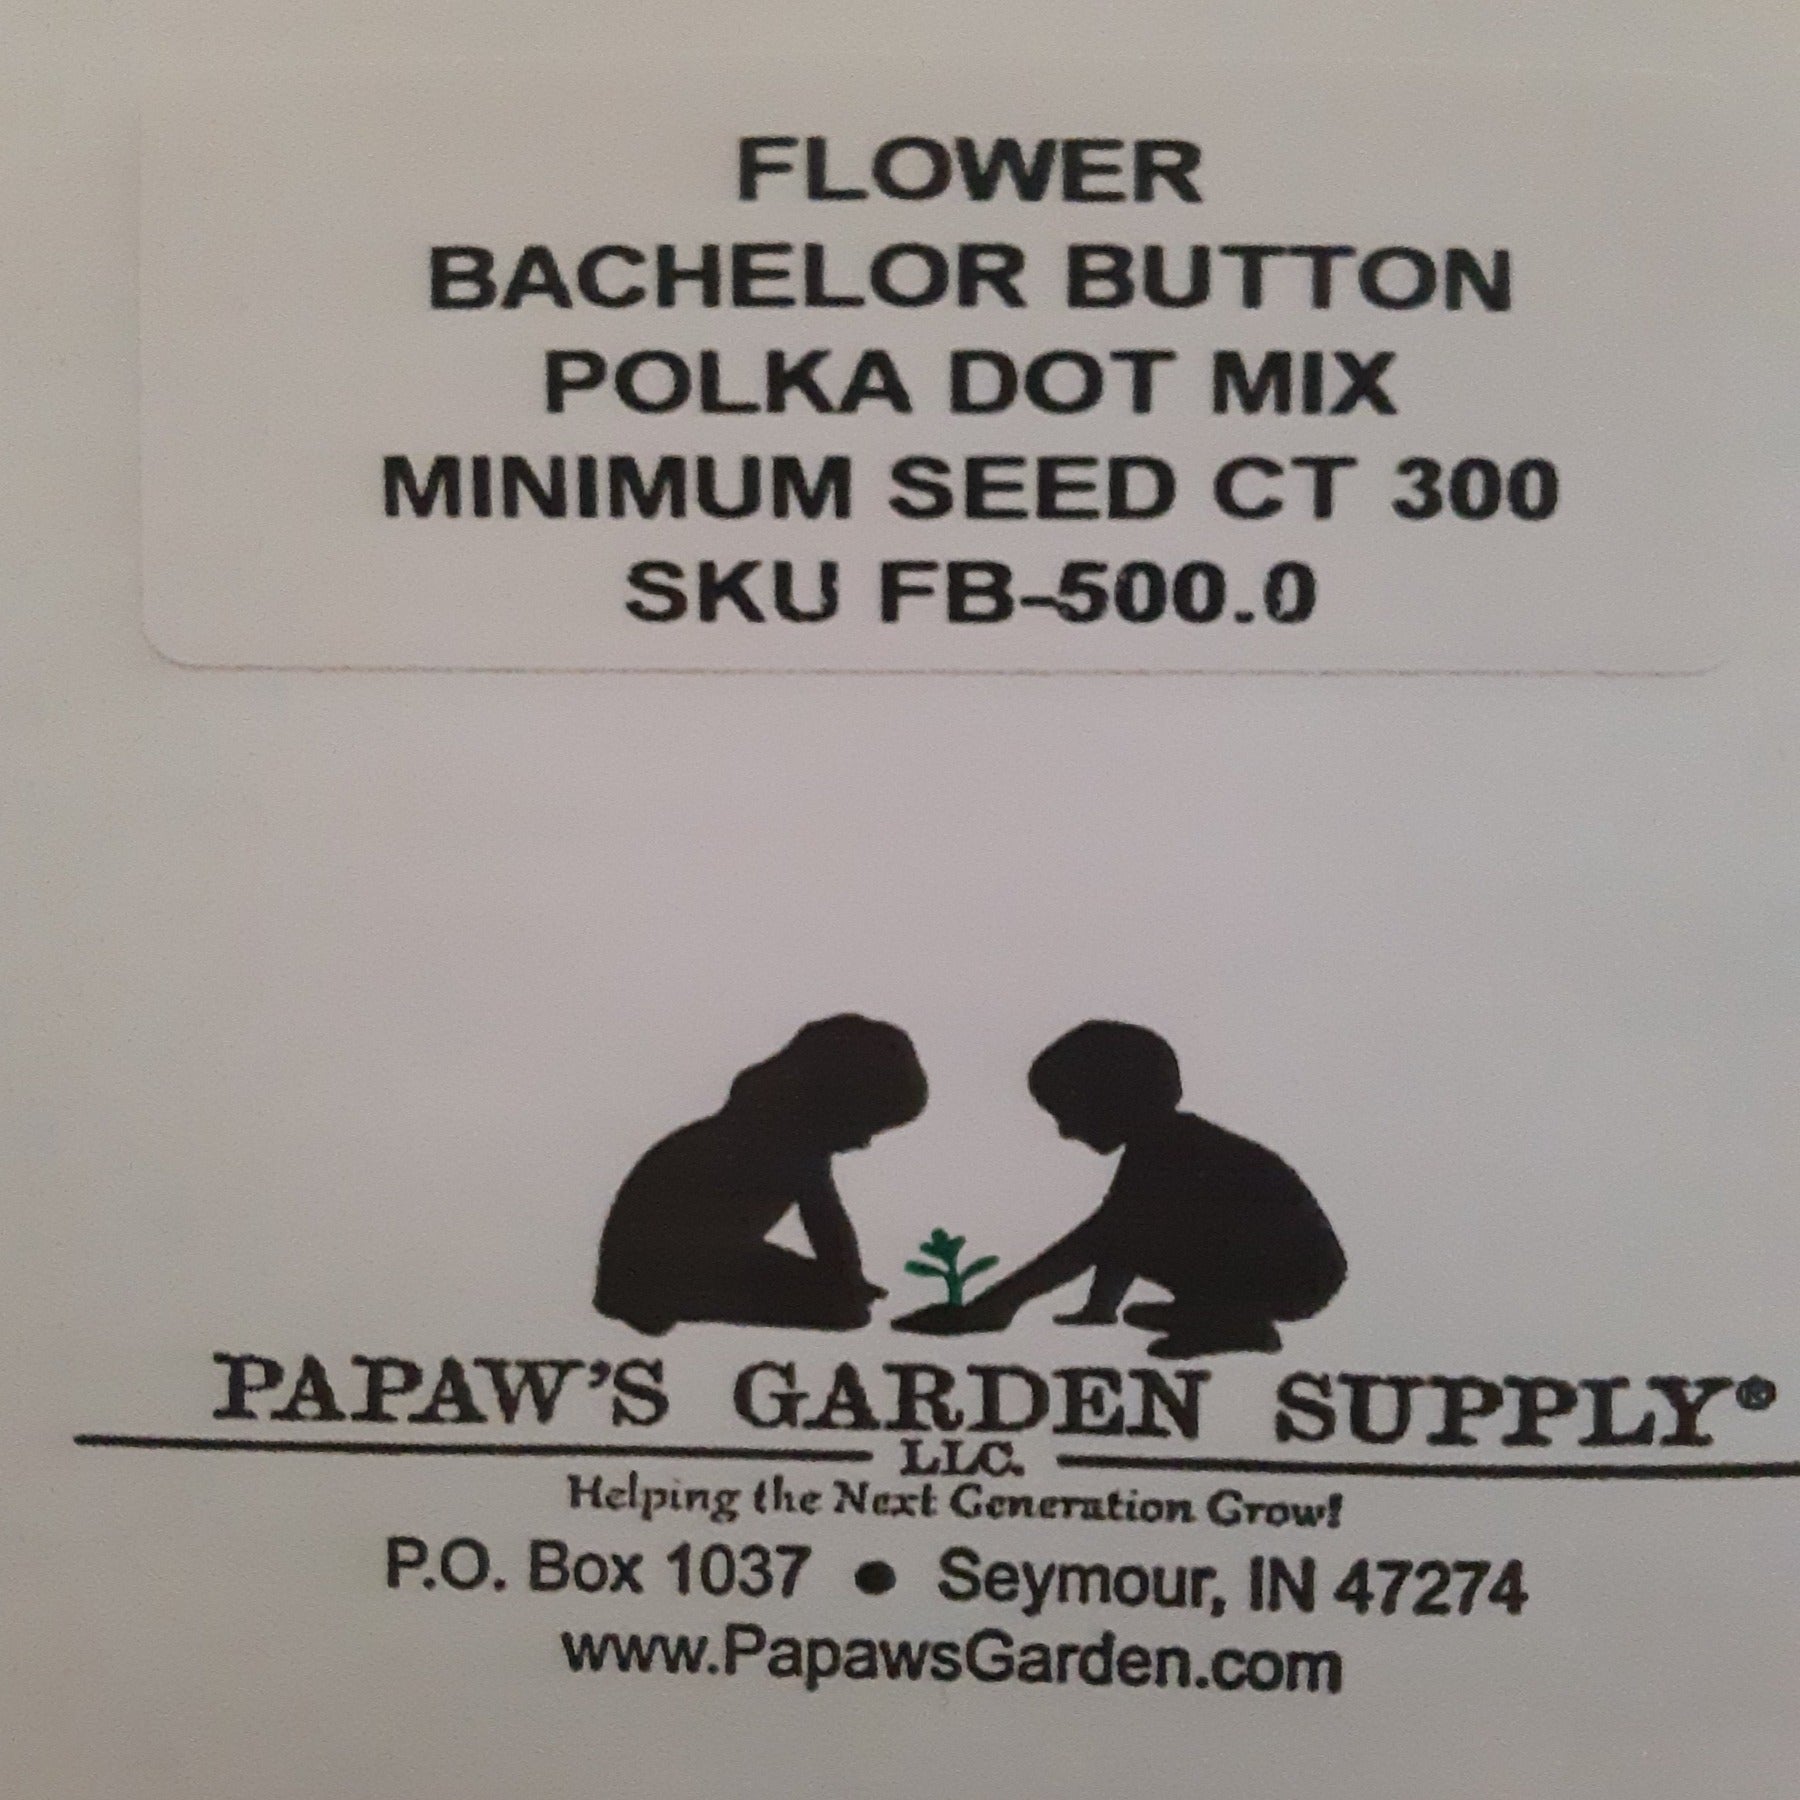 Bachelor Button Polka Dot Mix Flower Seeds